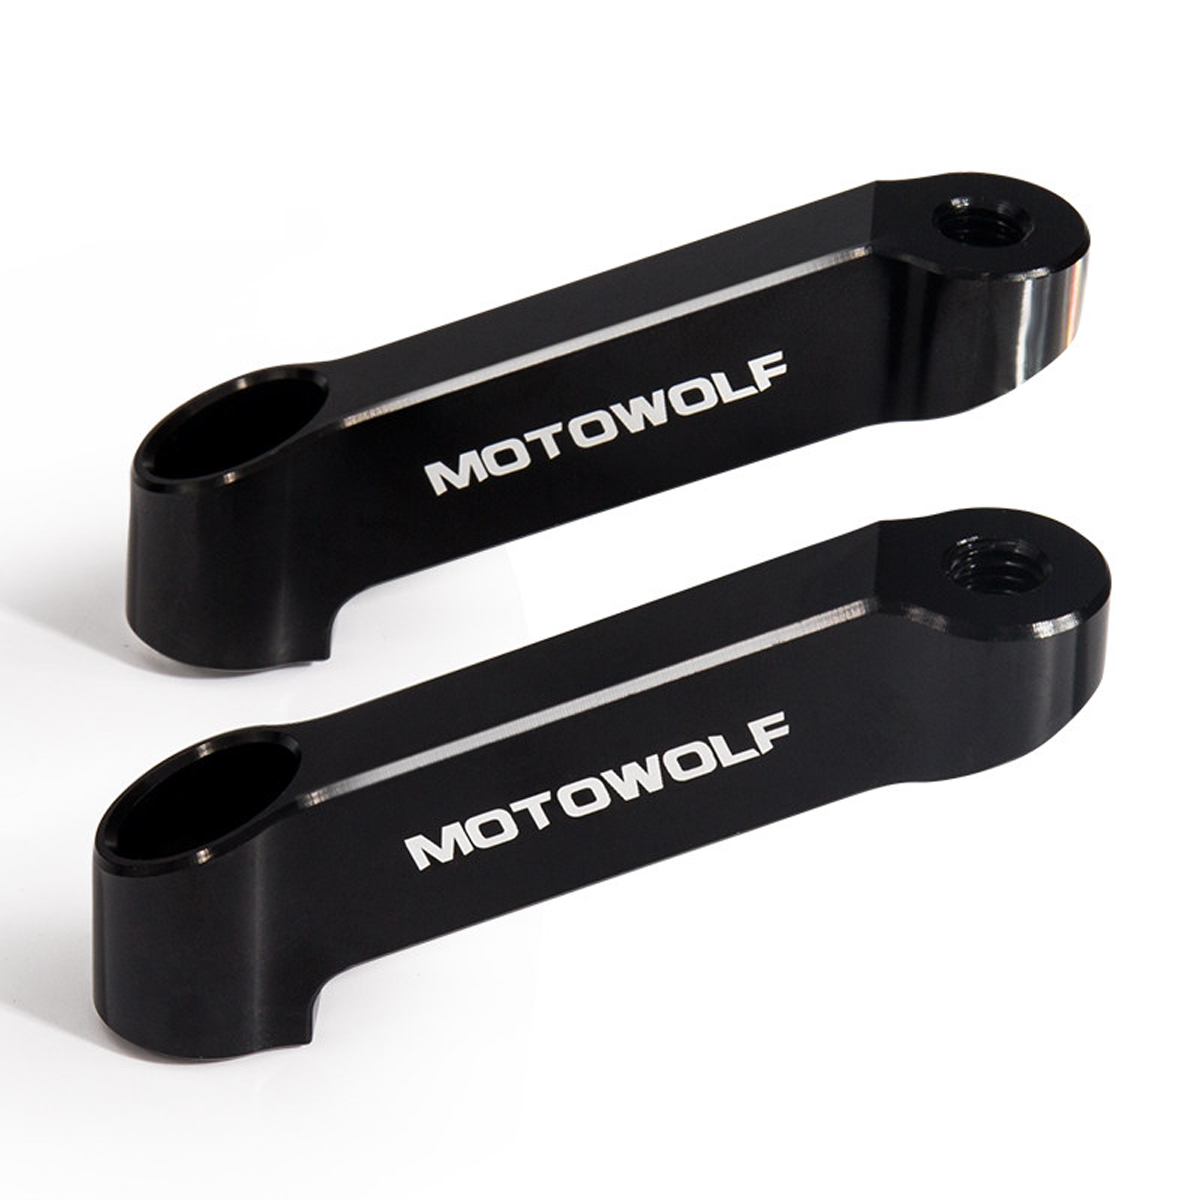 

MOTOWOLF 8mm CNC Mirrors Riser Extender Adaptor Aluminum Motorcycle Bracket